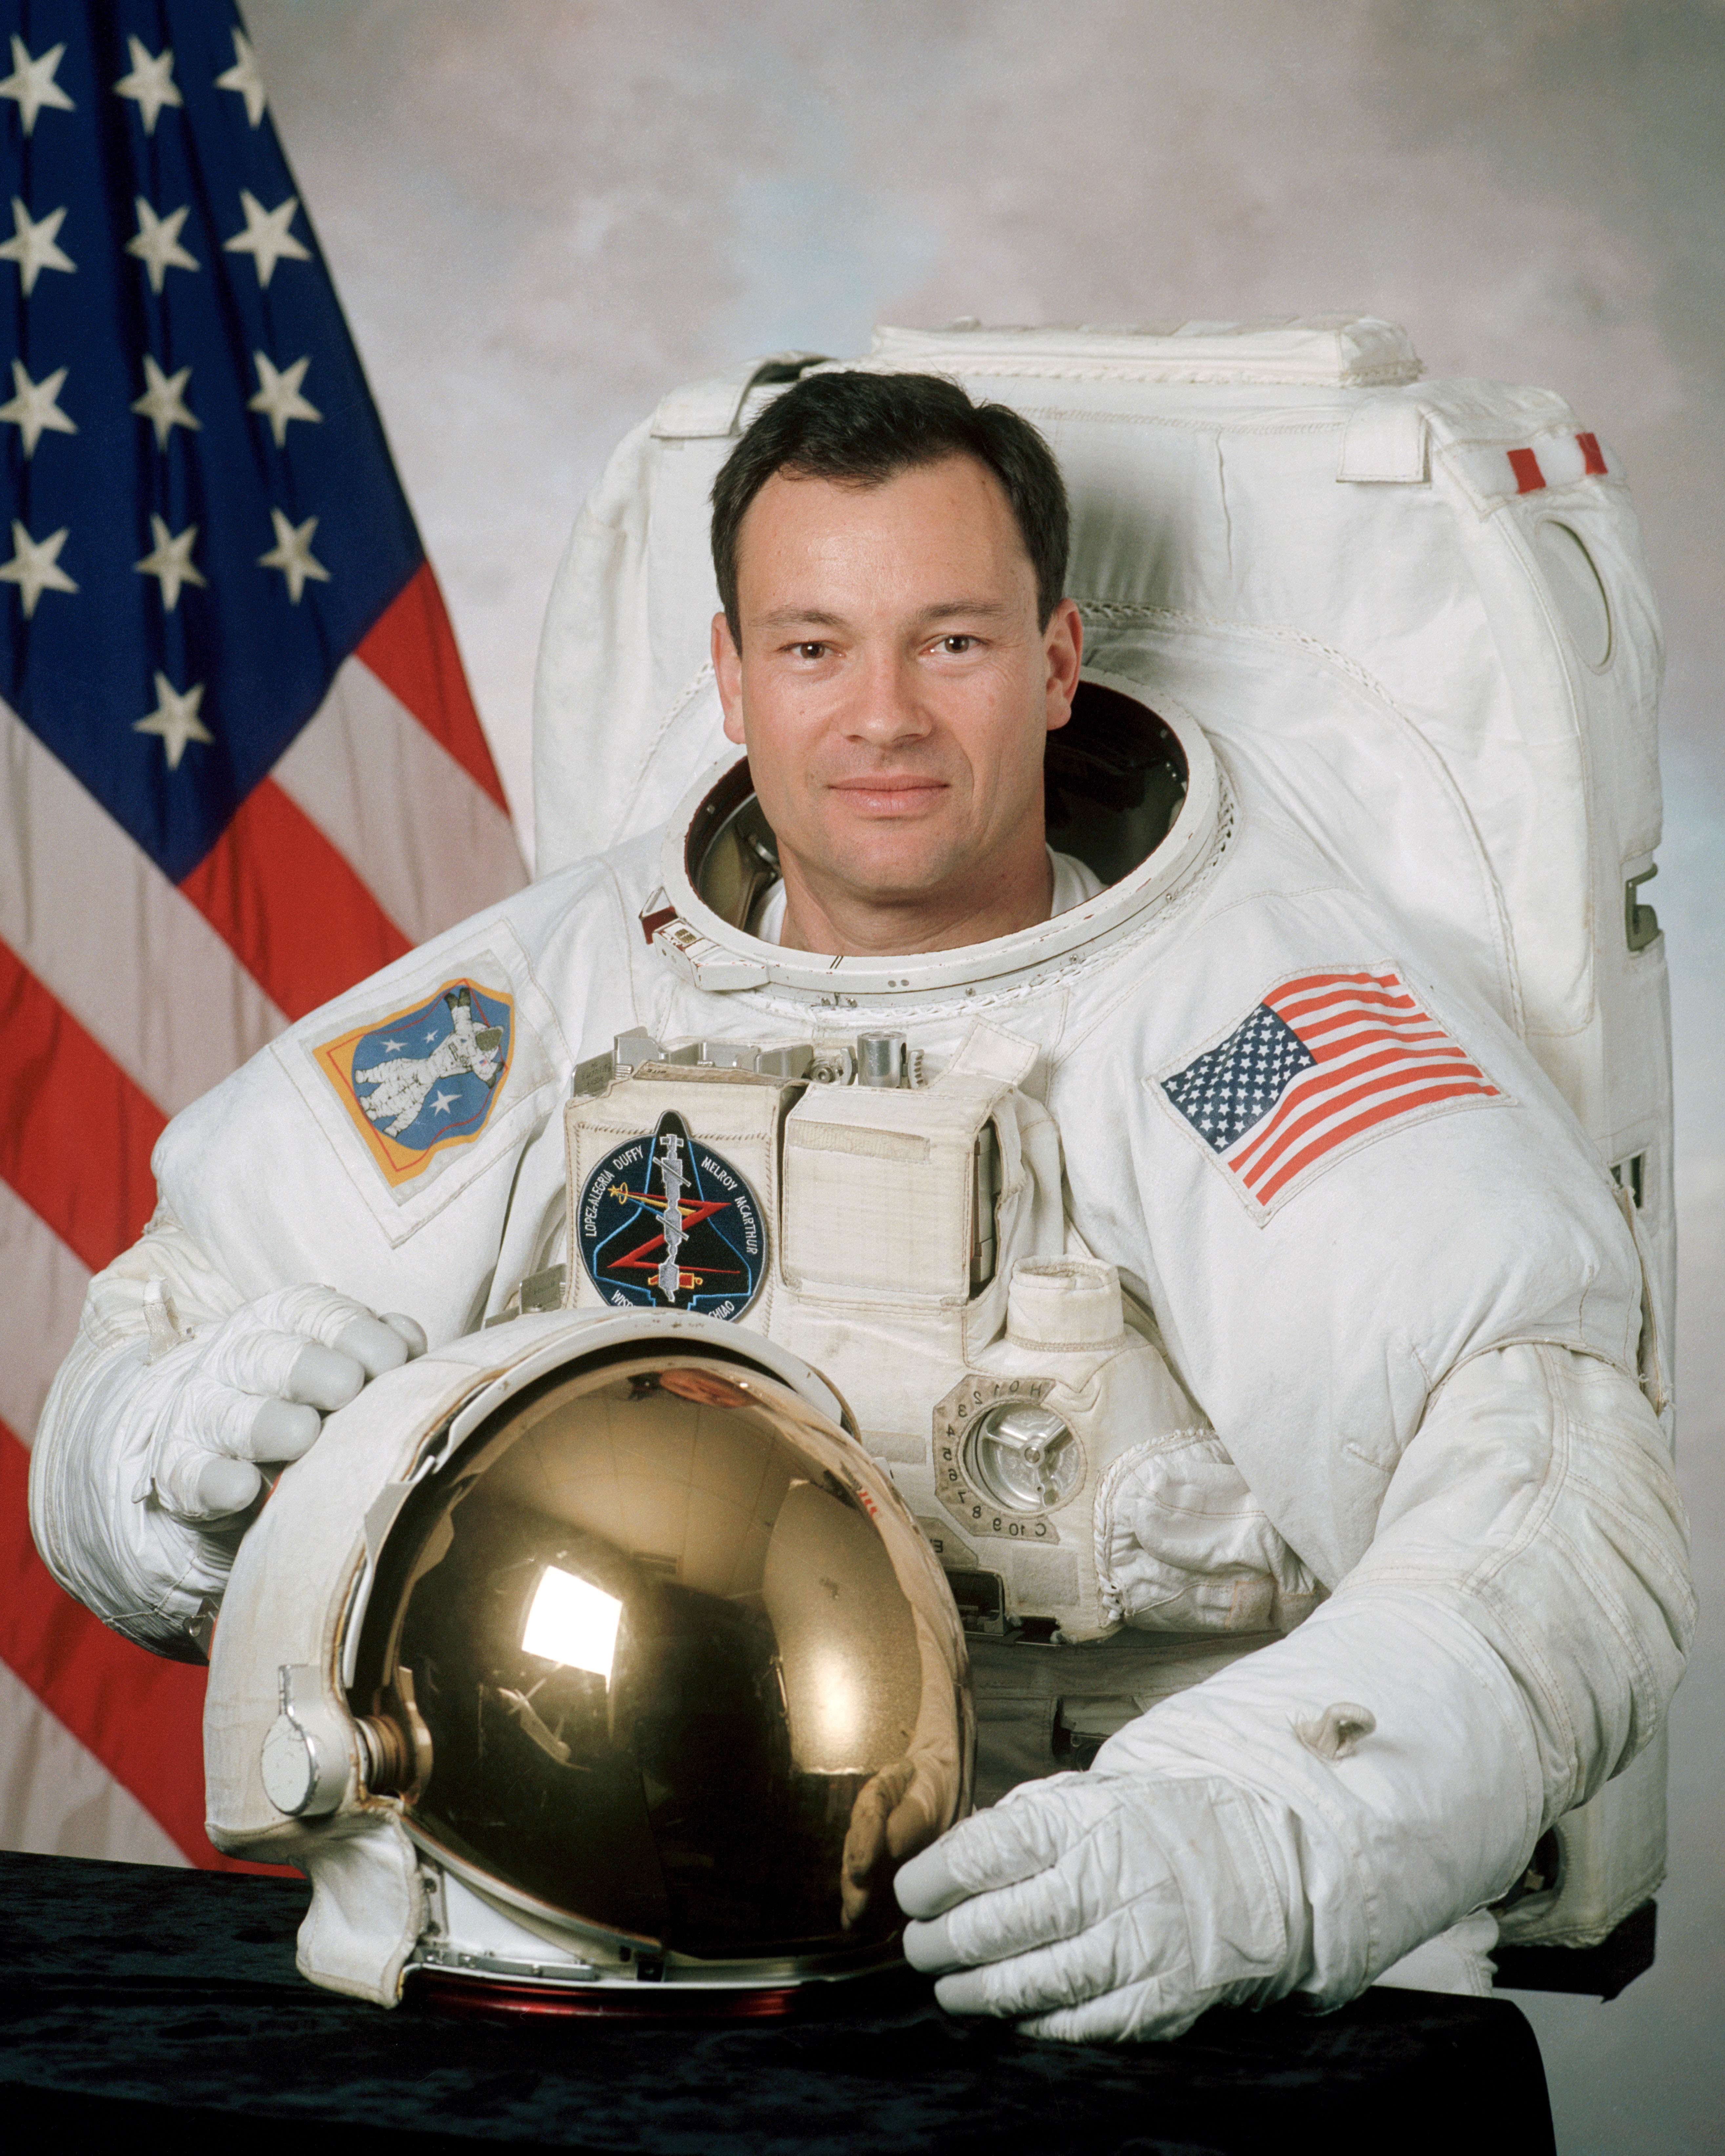 Michael López-Alegría veterán űrhajós, aki korábban három űrrepülős küldetésen is részt vett, és összesen tíz űrsétát tett